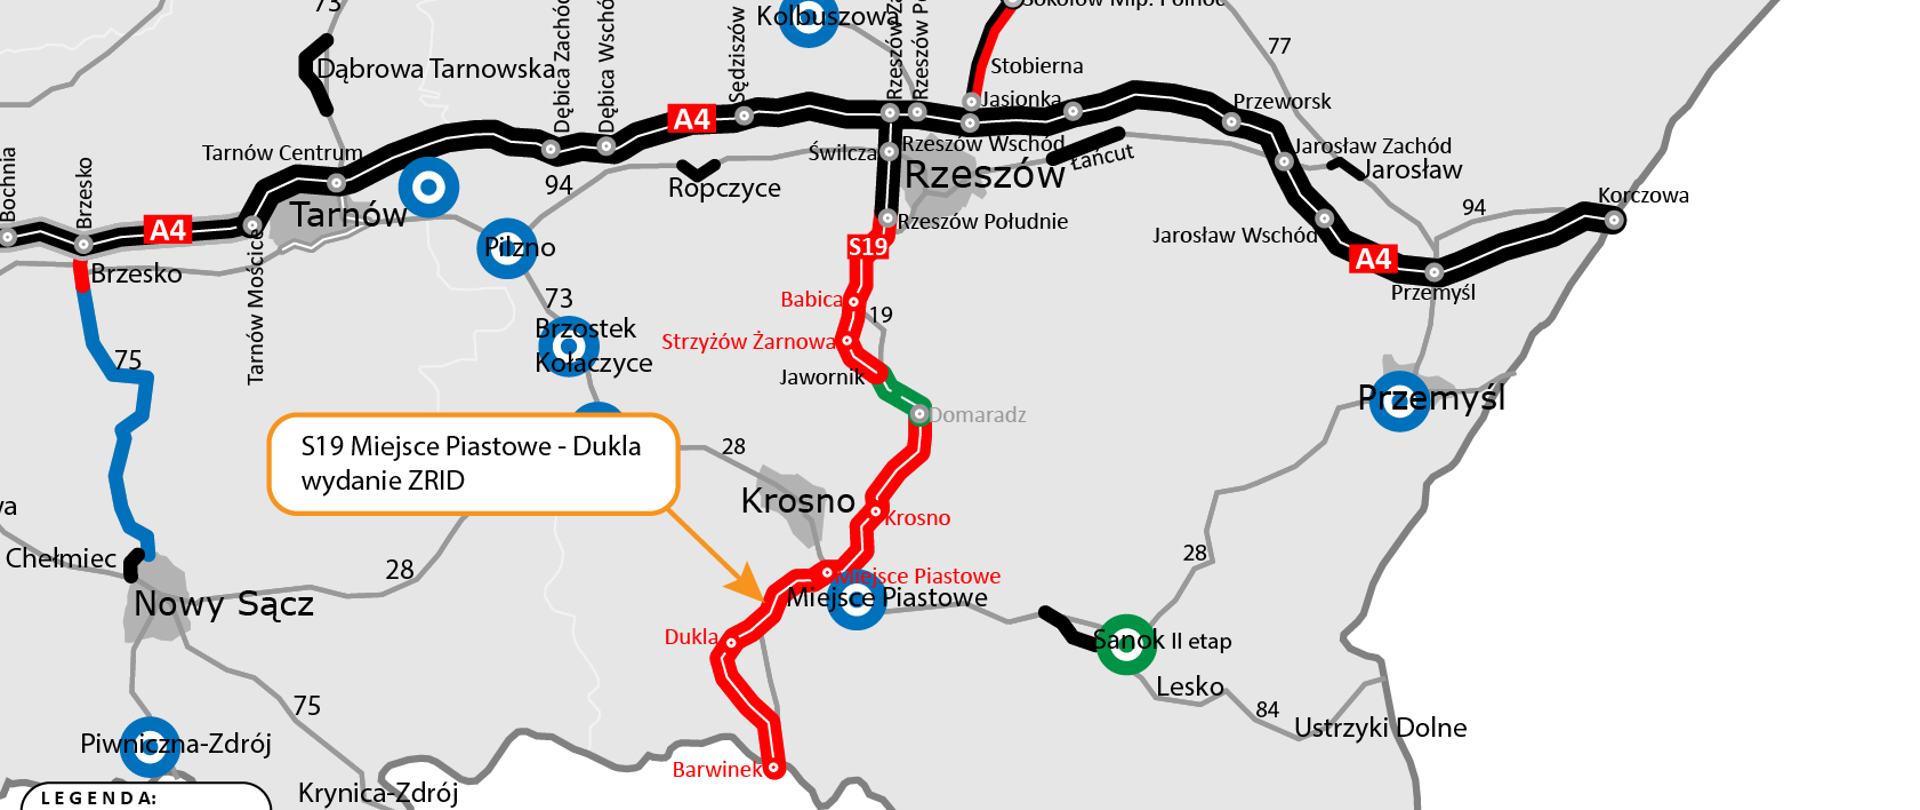 Mapa dot. wydanie ZRID dla S19 Miejsce Piastowe - Dukla, zaznaczony odcinek dla którego wydawany jest ZRID